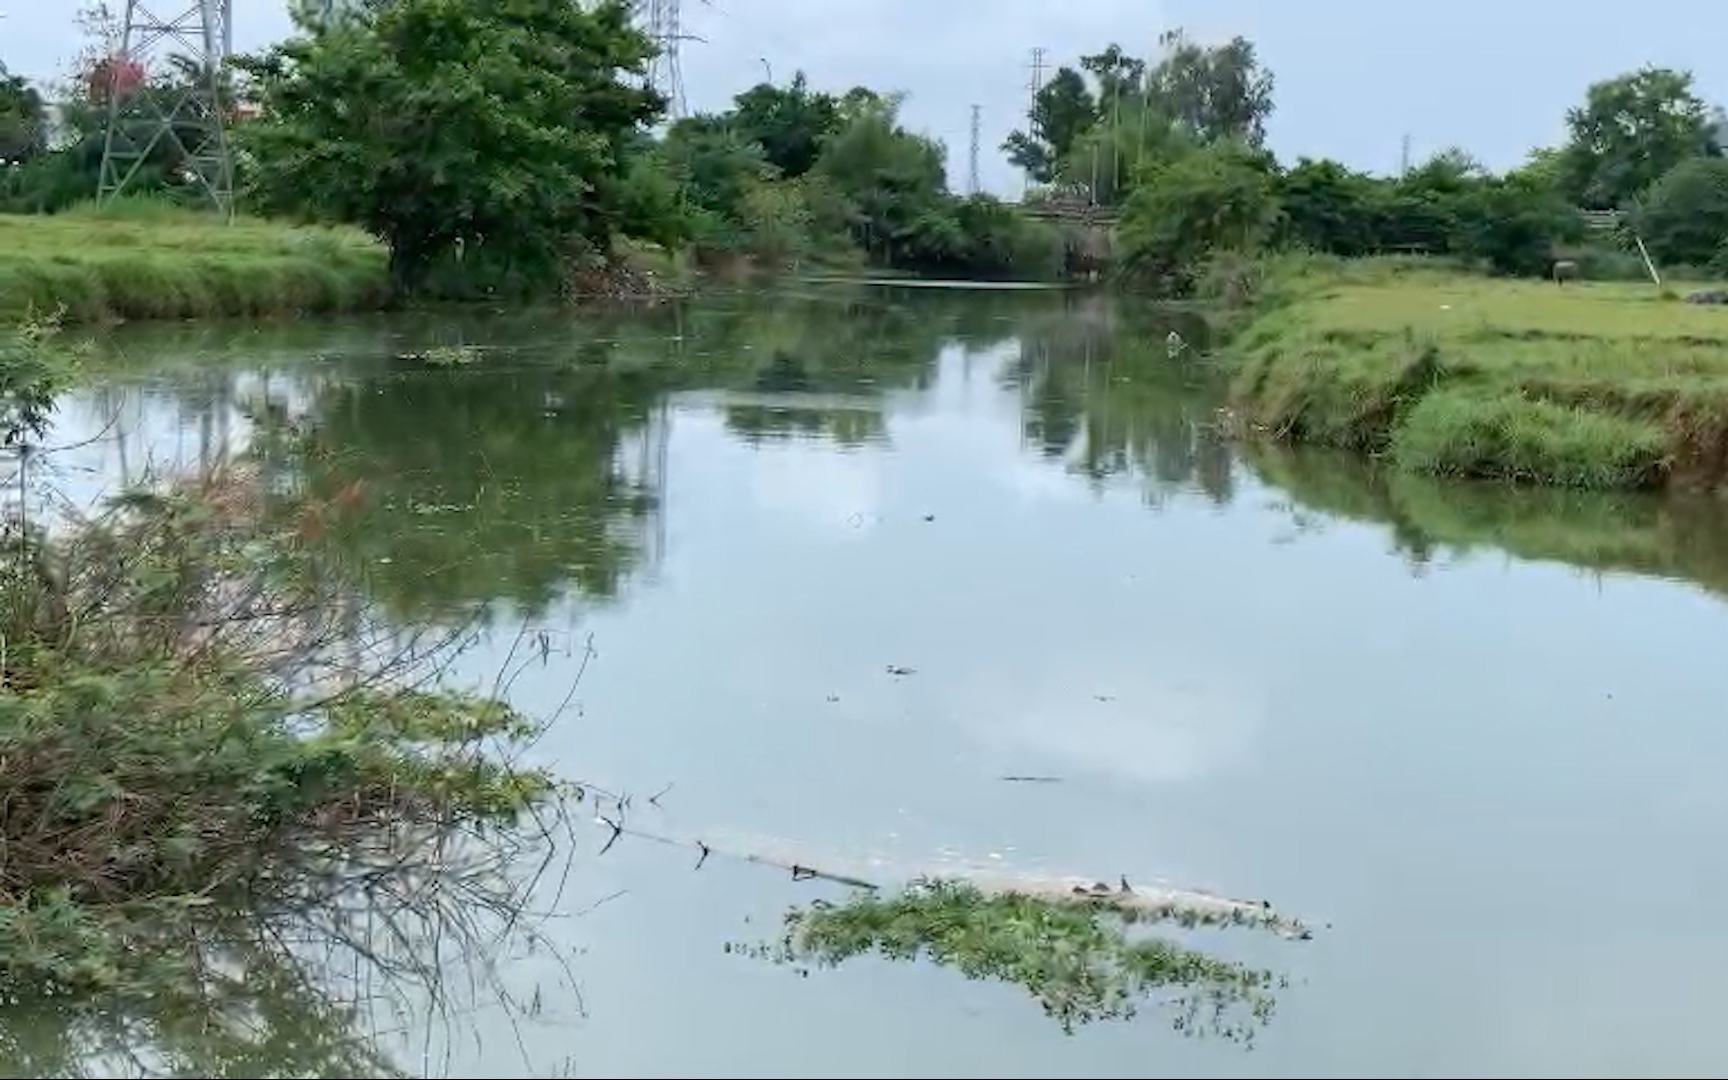 Quá nhiều đơn vị xả thải, khó xác định nguyên nhân cá chết ở sông Bàu Giang